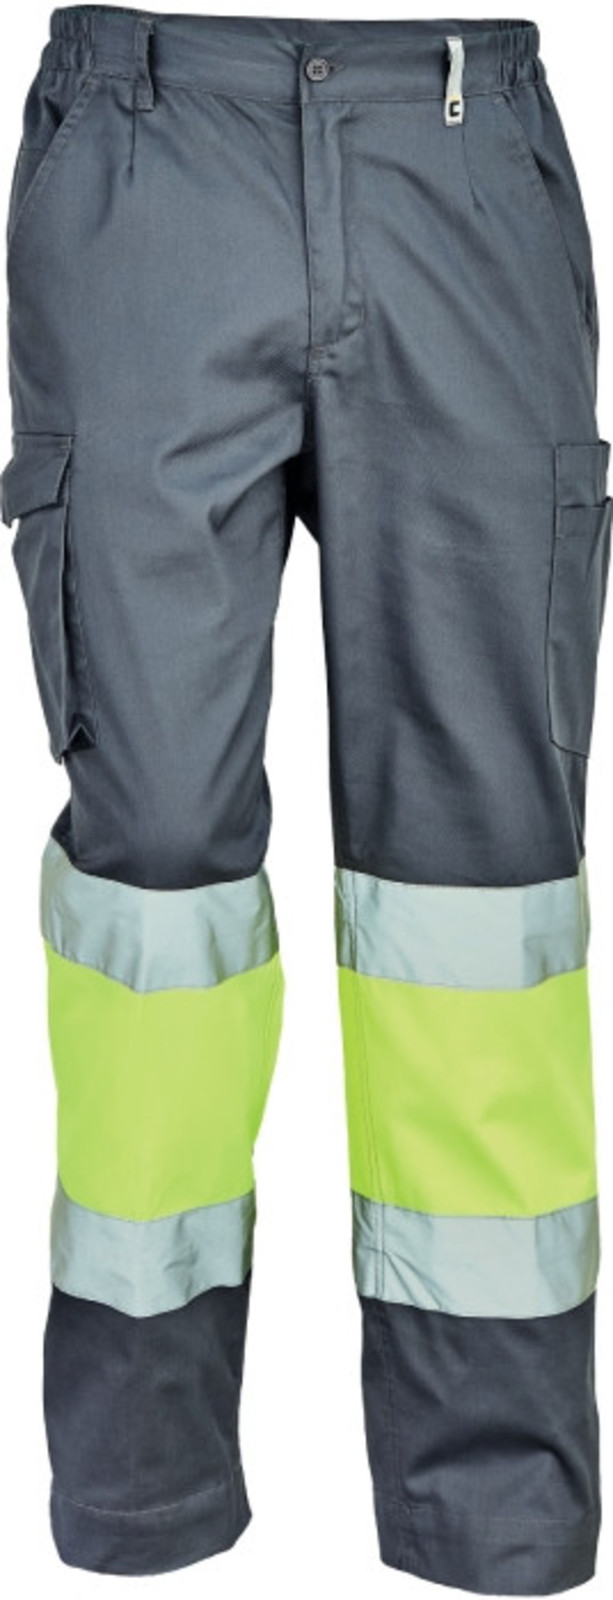 Pracovné reflexné nohavice Cerva Ciudades Bilbao HV - veľkosť: 46, farba: sivá/žltá